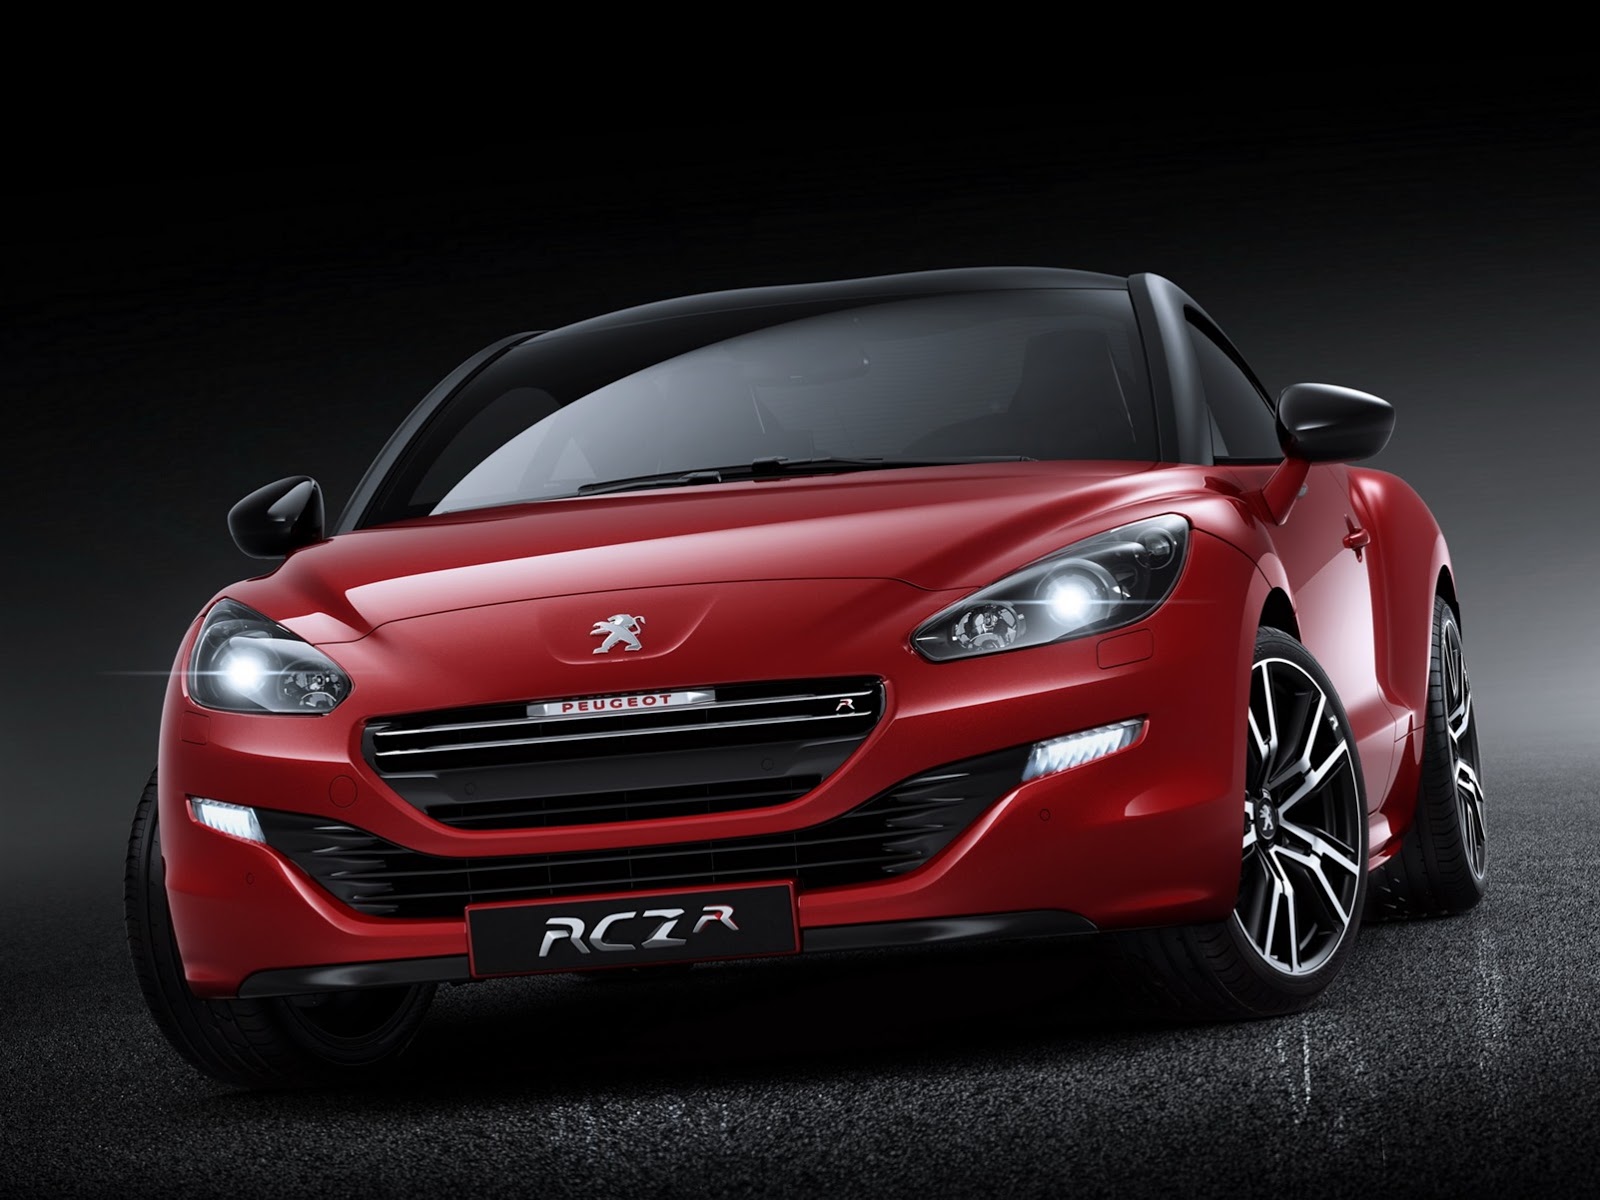  2014 Peugeot RCZ R (İlk resmi fotoğraflar)